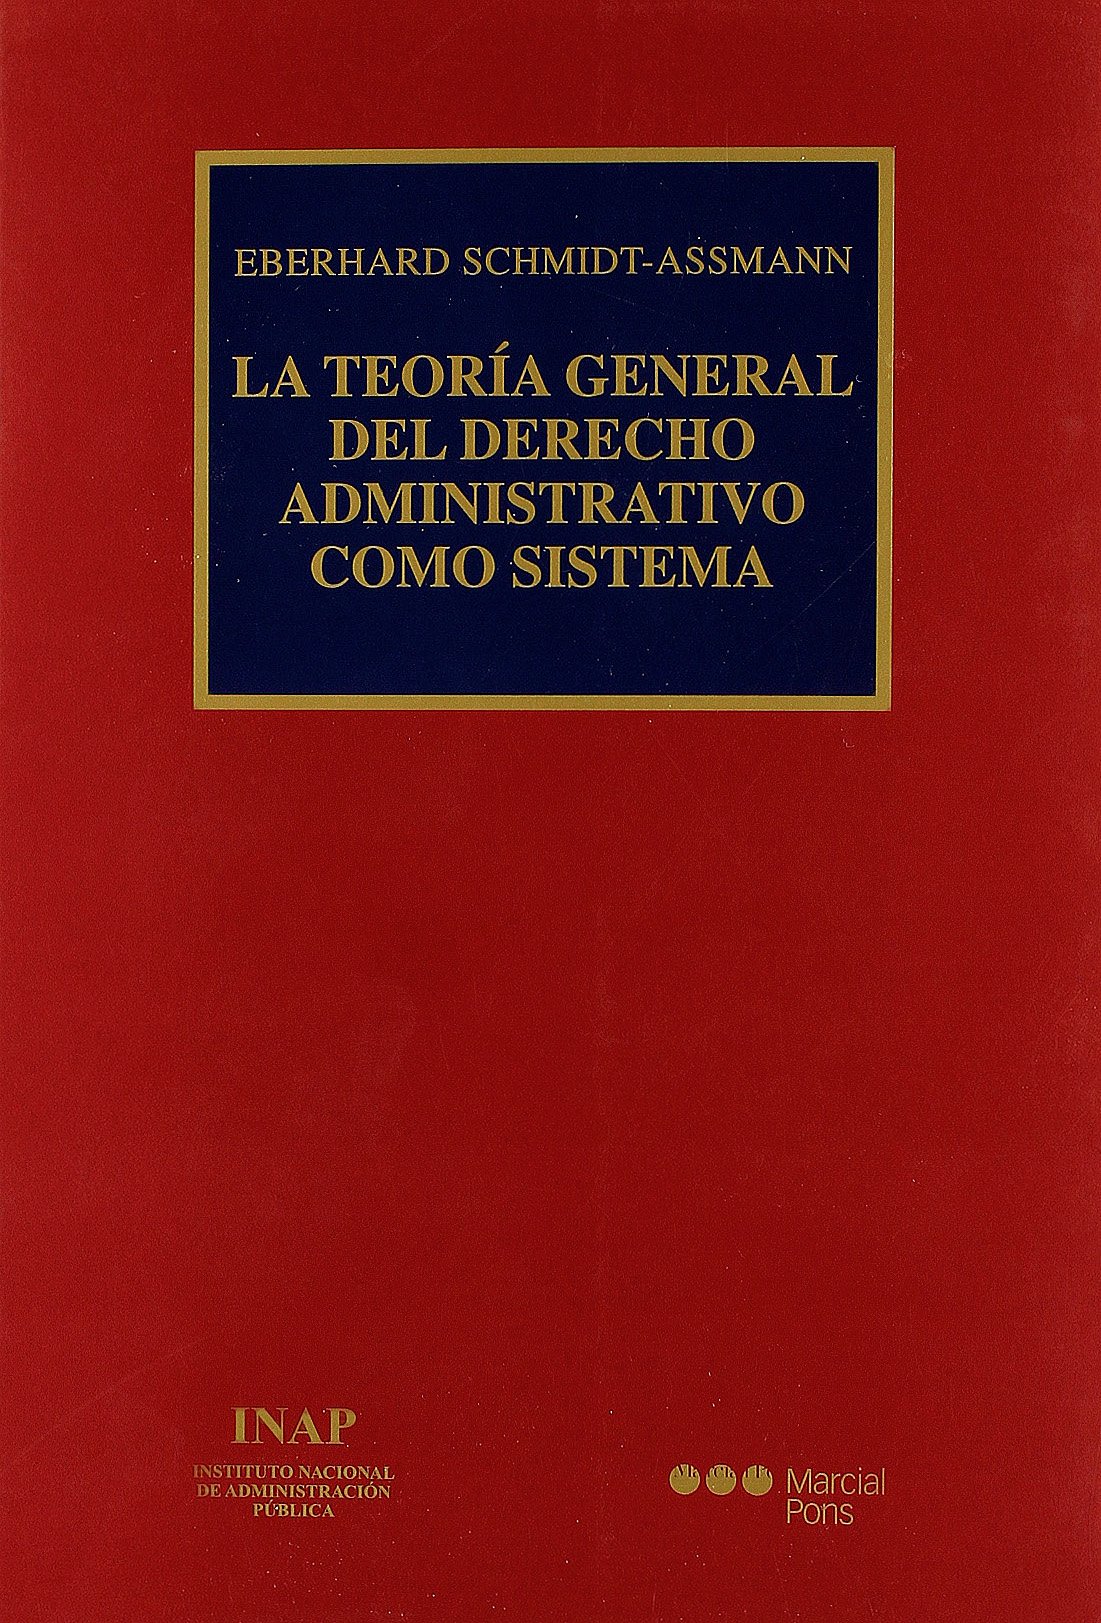 La Teoría General del Derecho administrativo como sistema